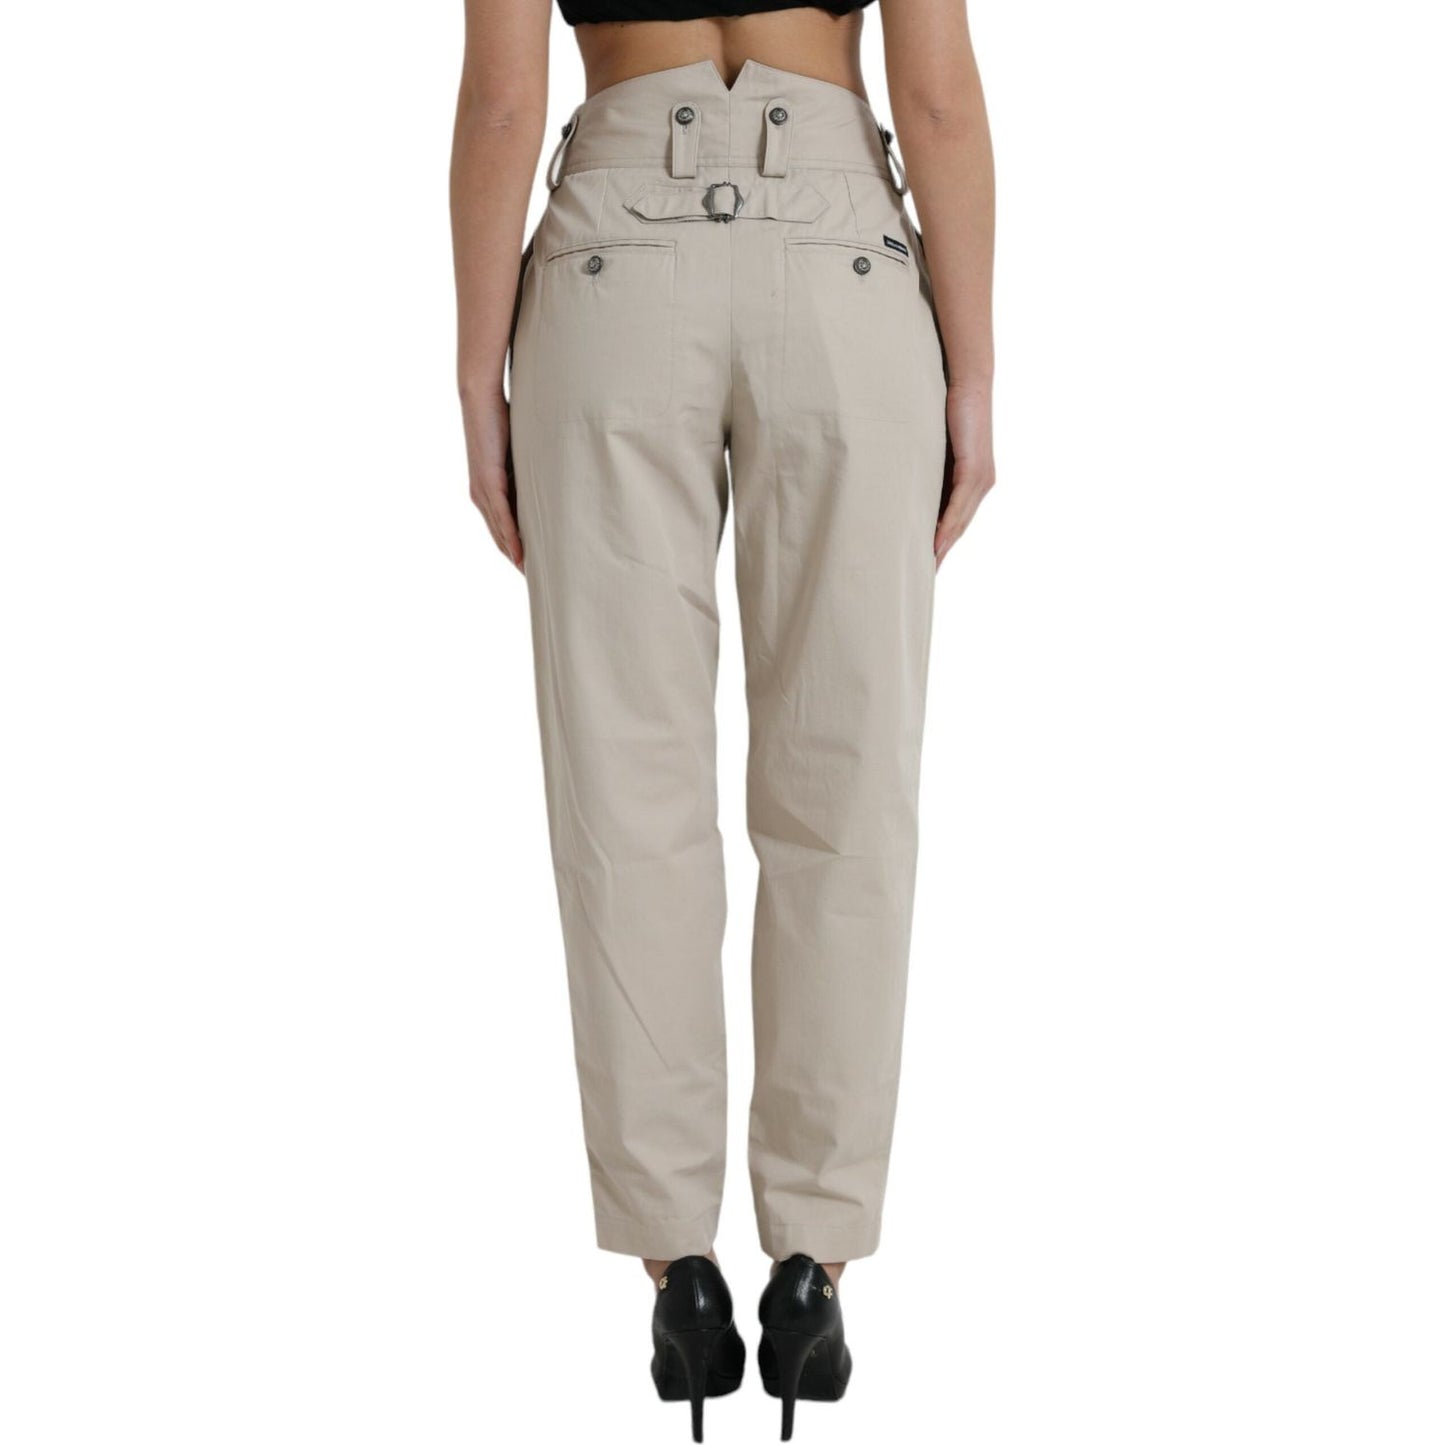 Dolce & Gabbana High-Waisted Tapered Fashion Pants - Beige beige-cotton-high-waist-tapered-pants